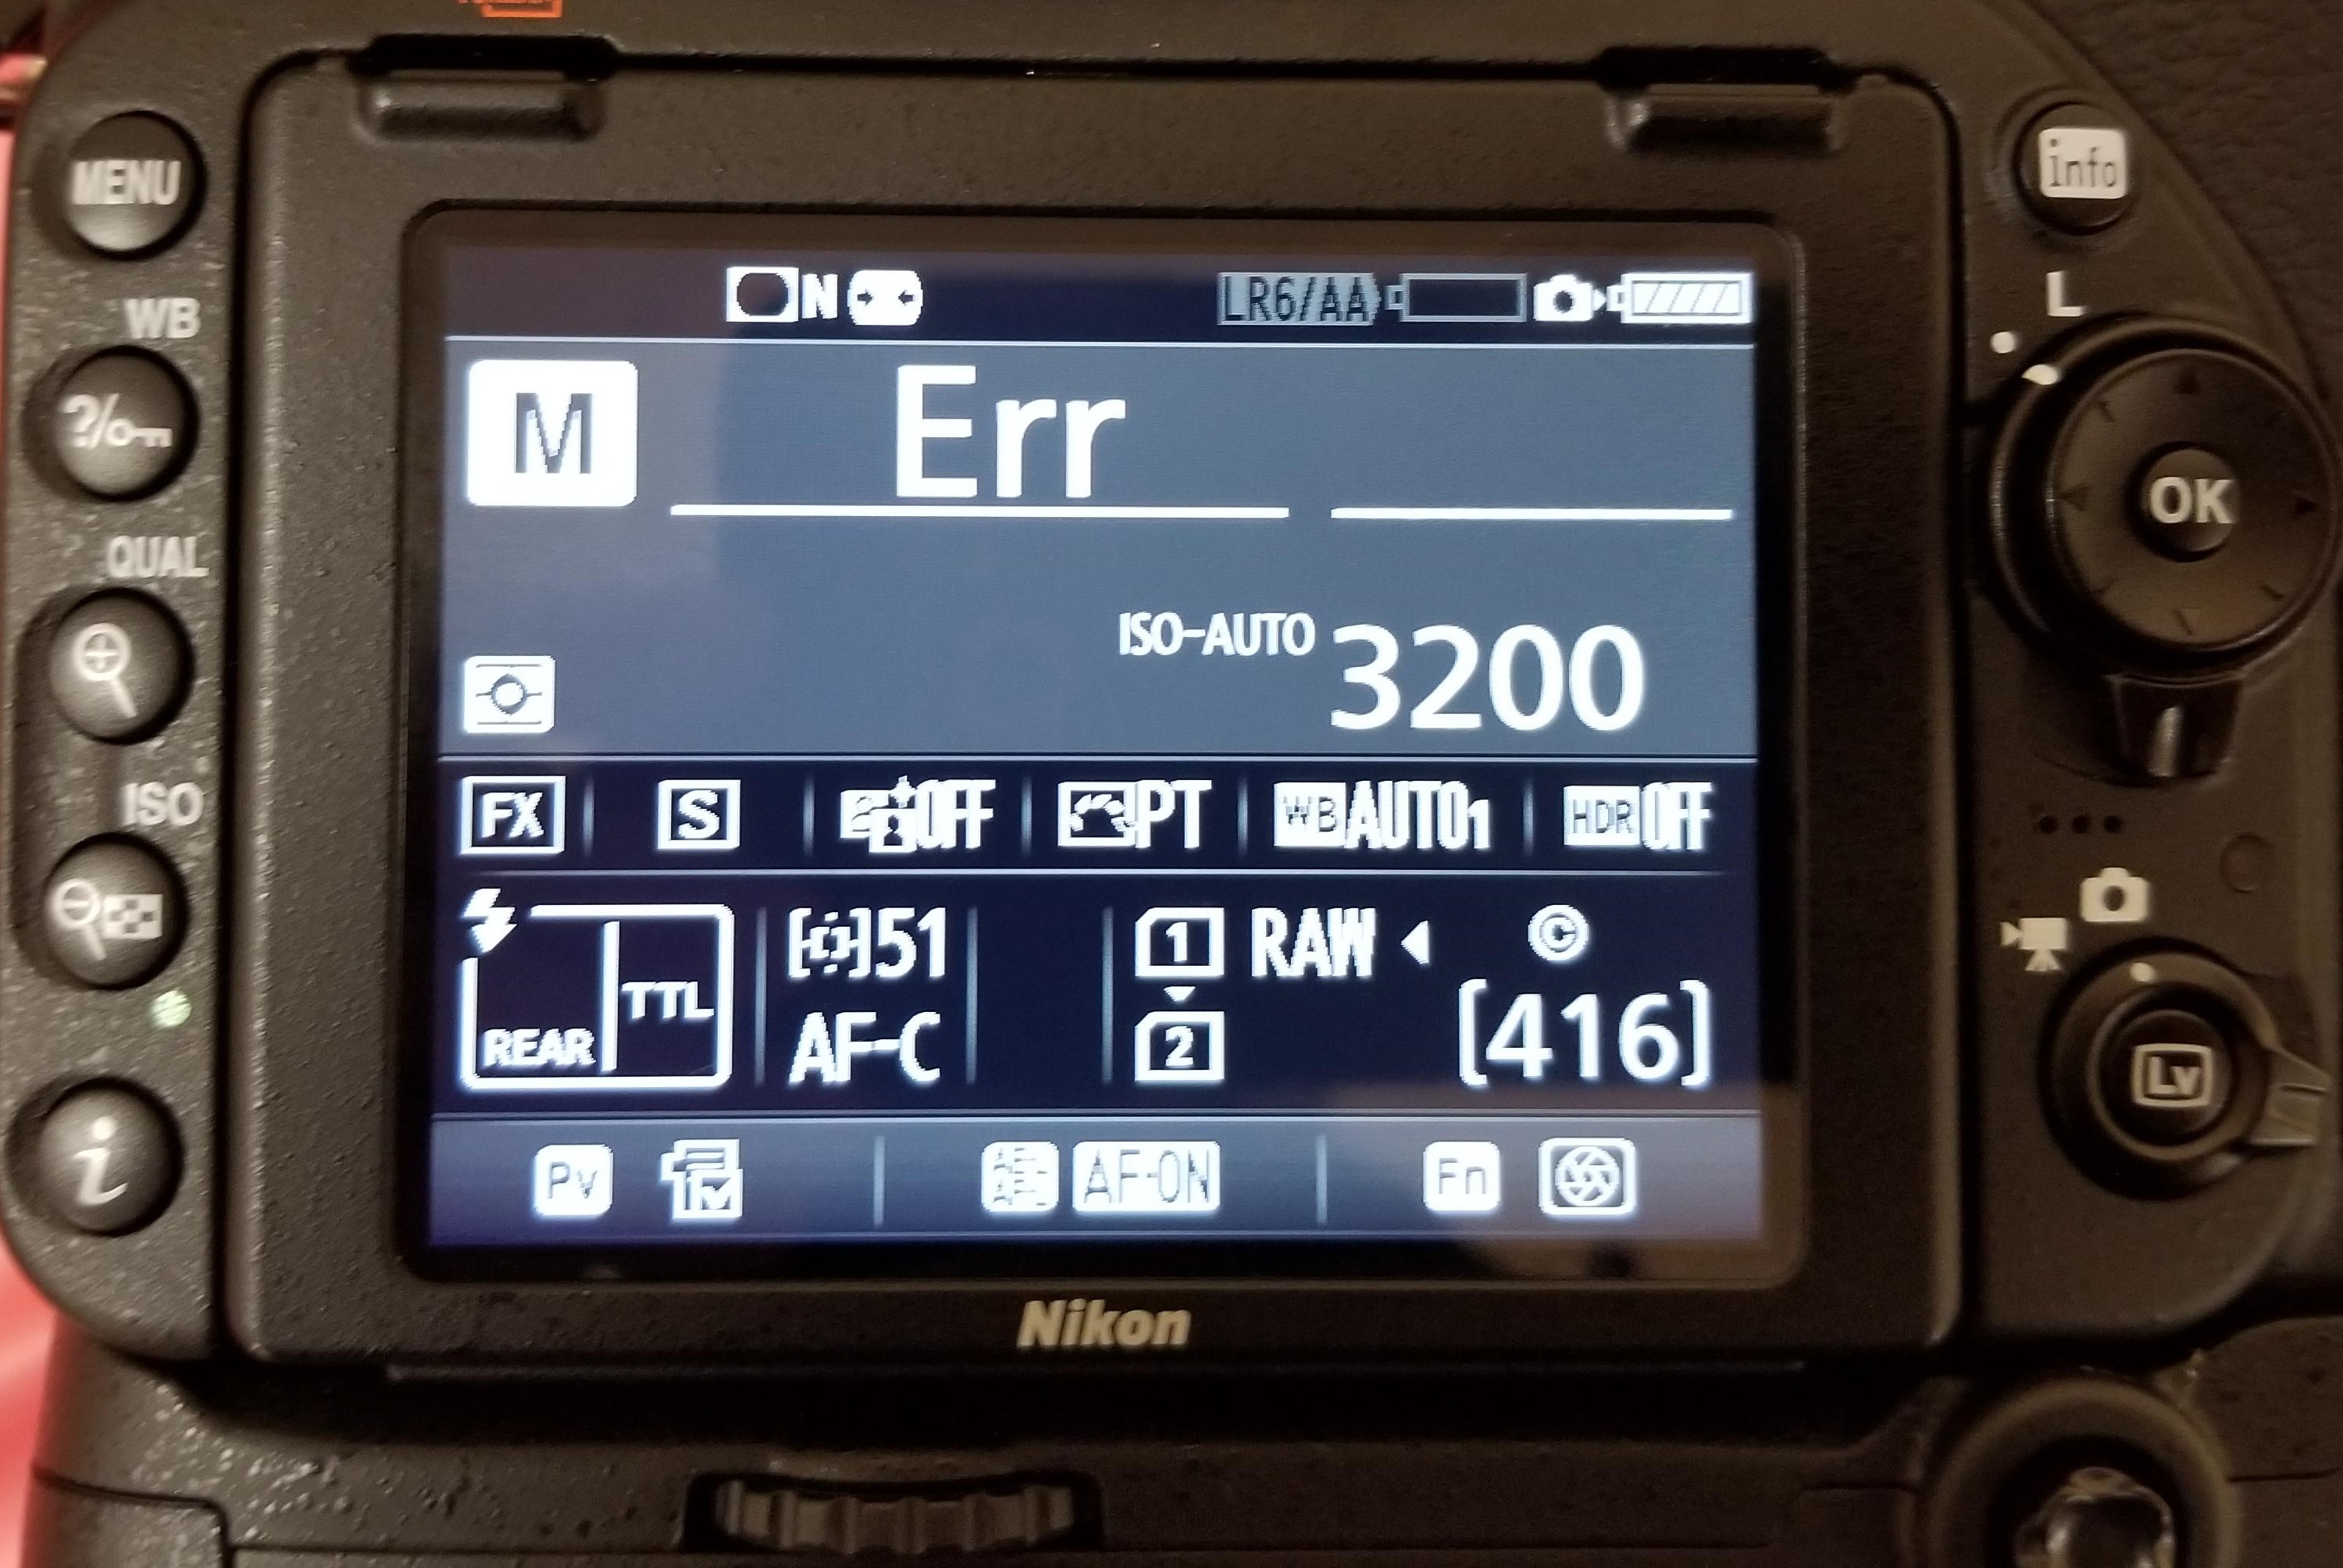 Errori dell’obiettivo della fotocamera - ERR, FEE, For, E, ecc